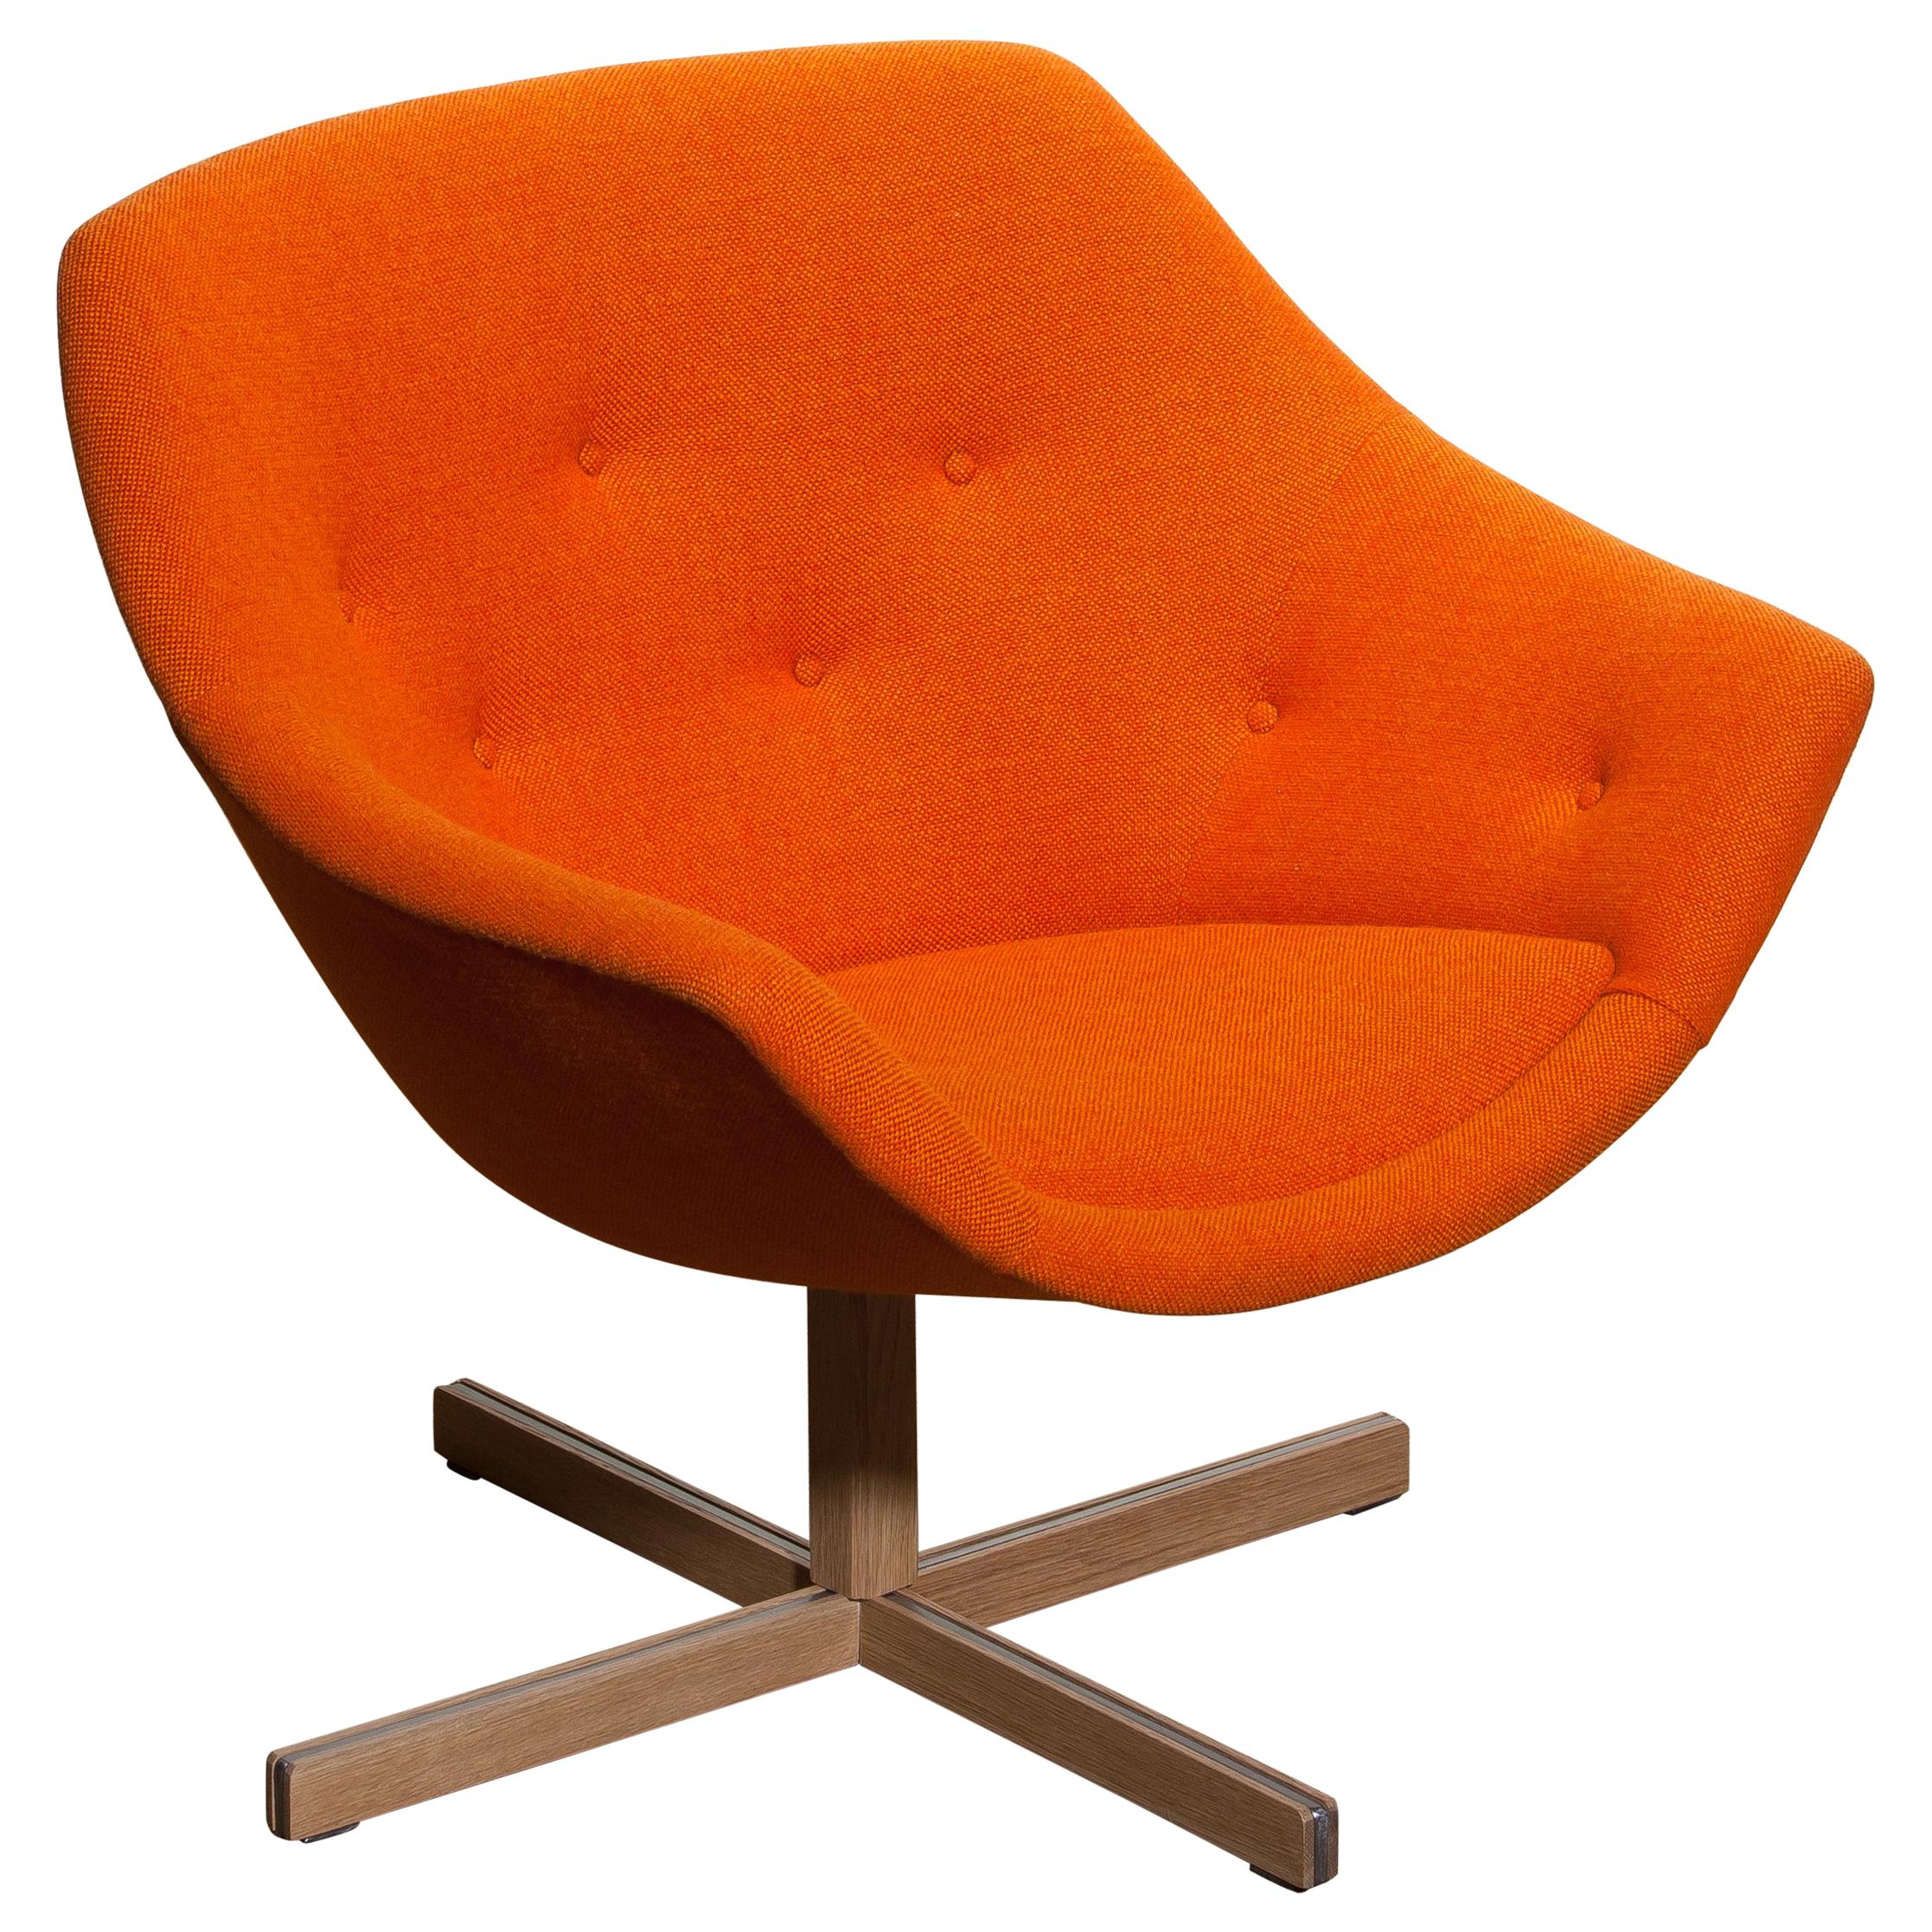 Fantastique fauteuil pivotant Mandariini réalisé par Carl Gustaf Hiort pour Puunveisto Oy, travail du bois Ltd. Cette chaise est recouverte d'un tissu orange boutonné 'Hallingdal' de Kvadrat conçu par Nanna Ditzel sur une base pivotante en chêne.
Il